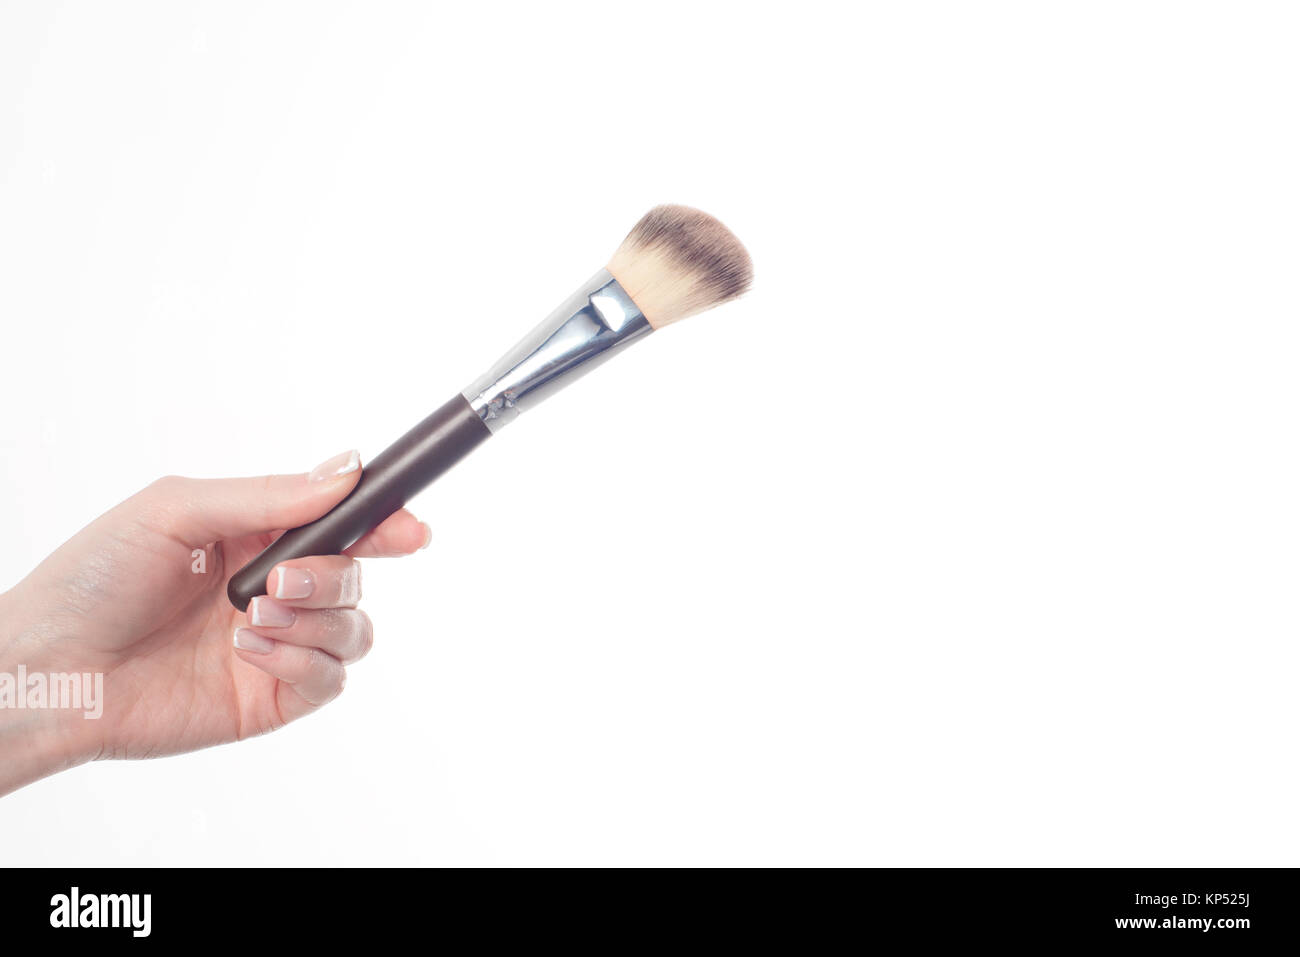 Female hand holding professional make-up brushe isolated on white background Stock Photo